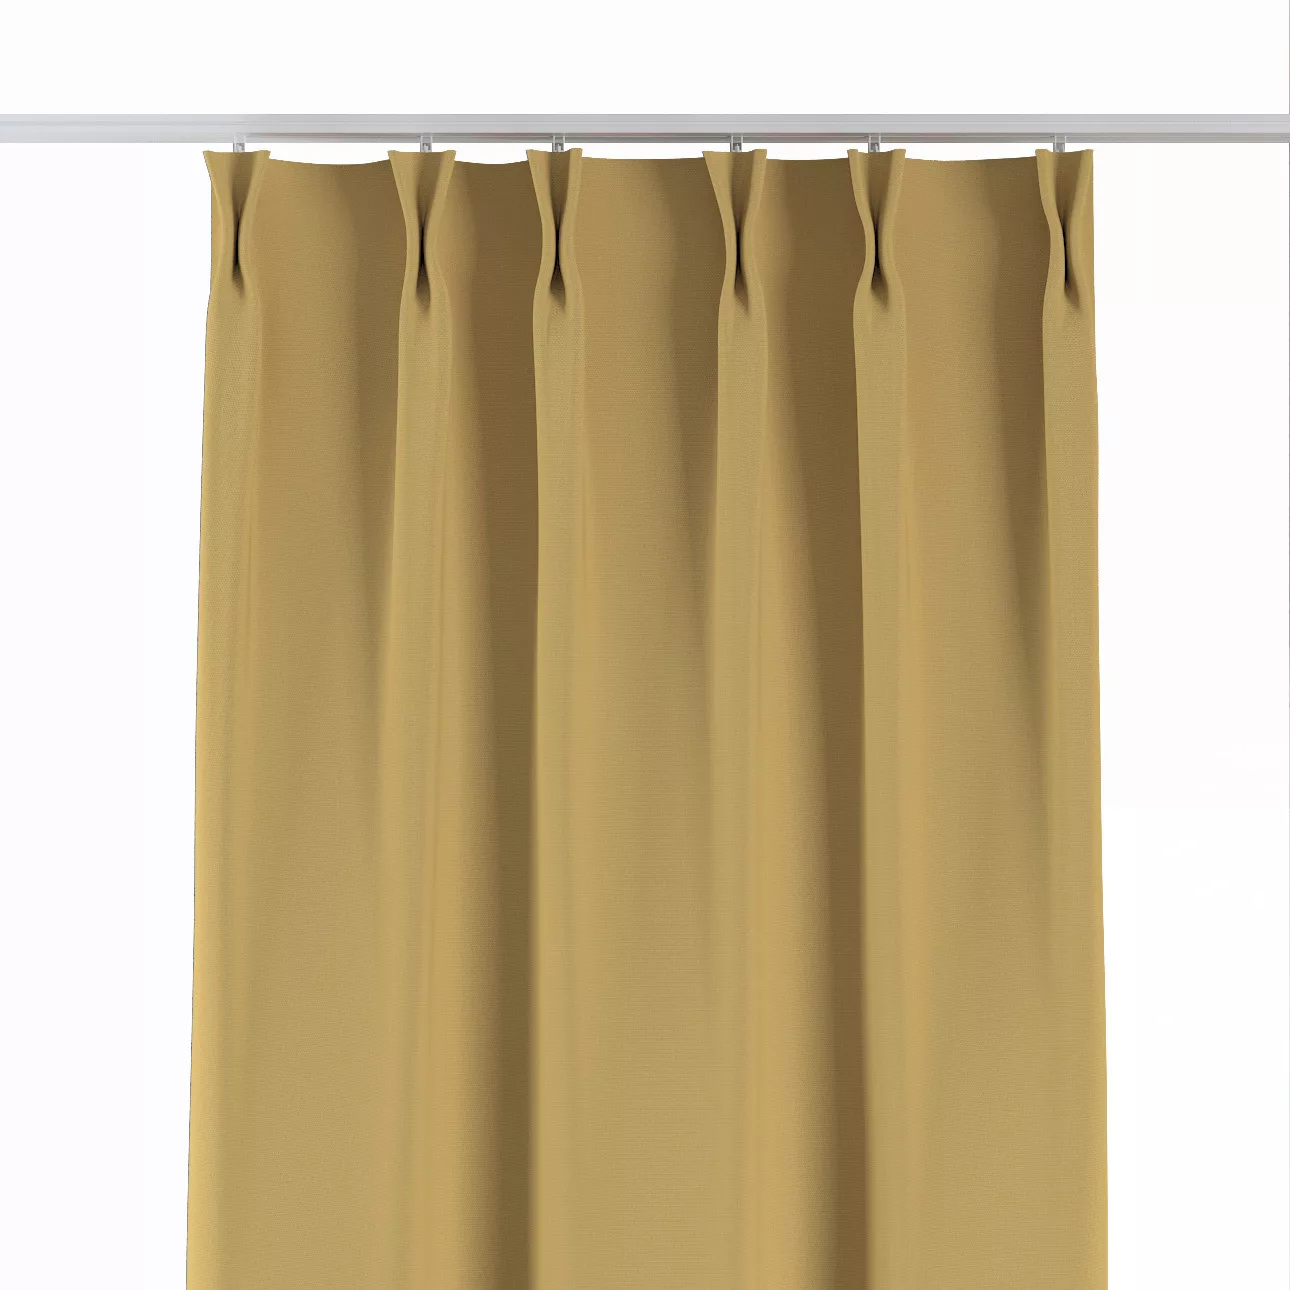 Vorhang mit flämischen 2-er Falten, chiffongelb, Cotton Panama (702-41) günstig online kaufen